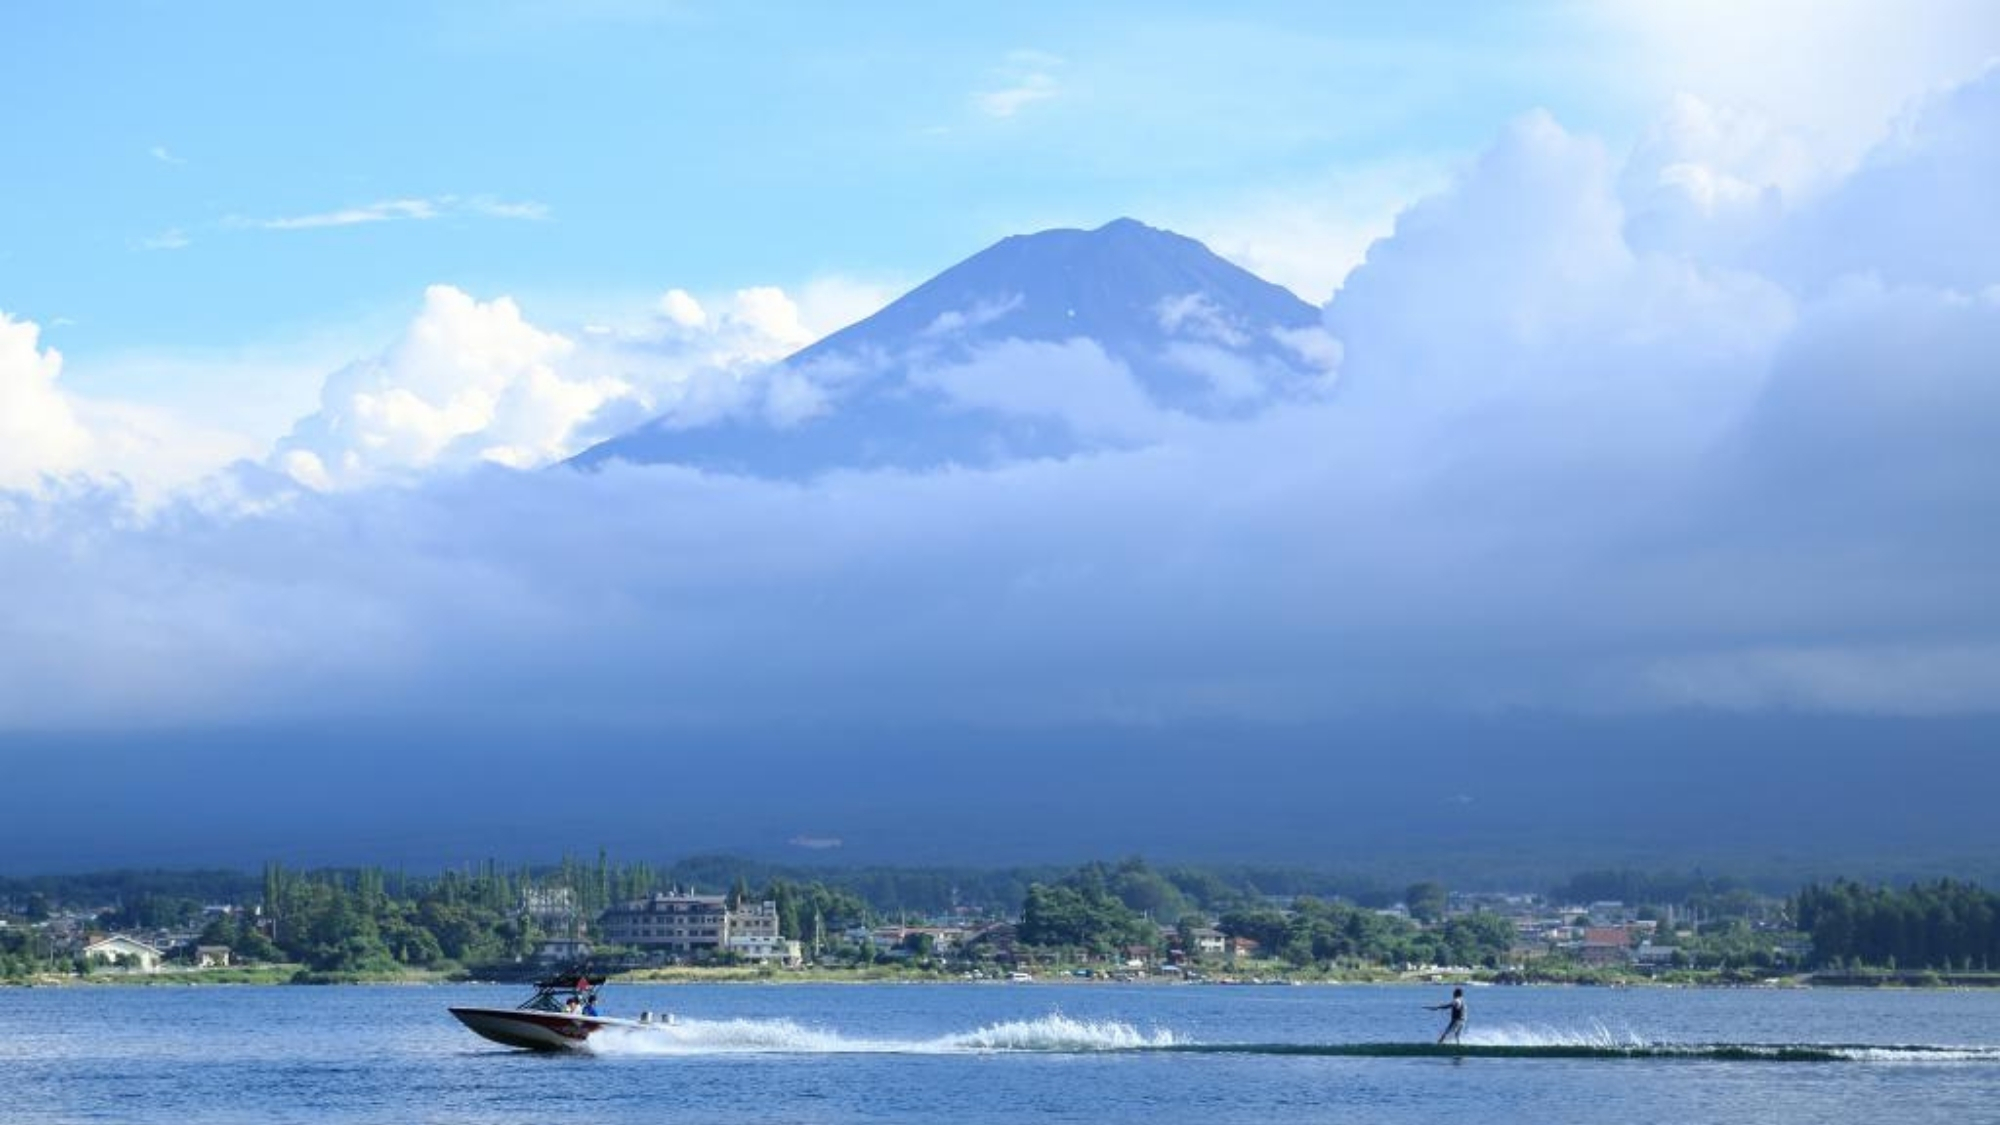  富士山を背景にジェットスキーを楽しめるのも山梨ならではです。